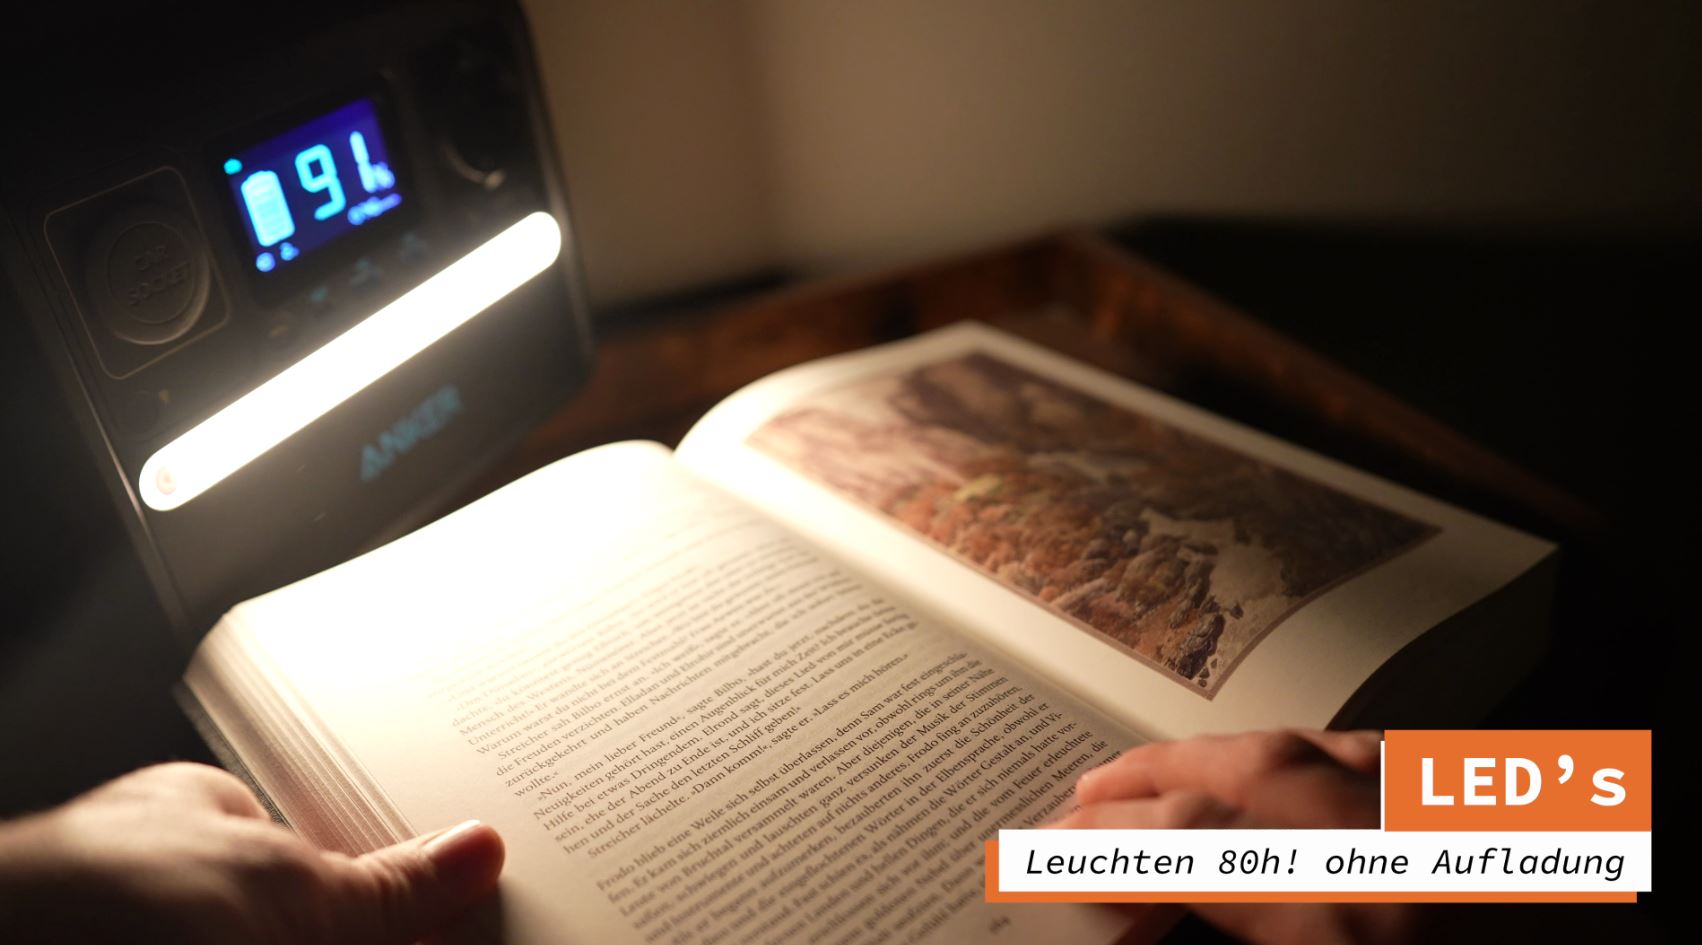 Anker 521 portable Power Station LED-Leuchten lesen Buch